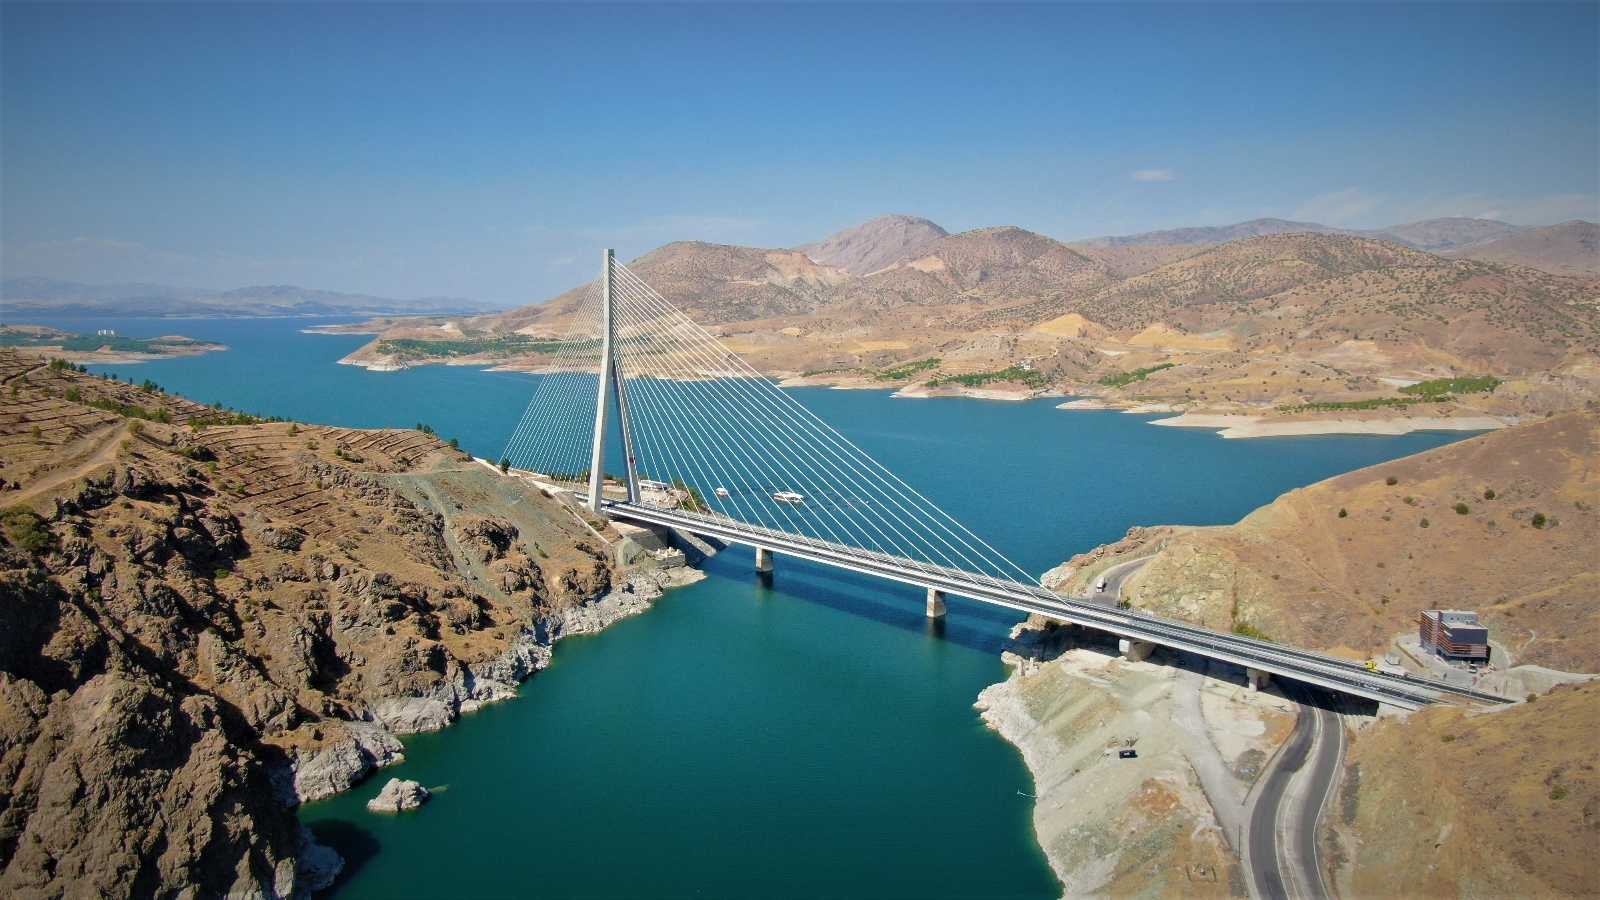 16 şehri birbirine bağlayan Kömürhan Köprüsü sürücülere kolaylık sağlıyor #elazig